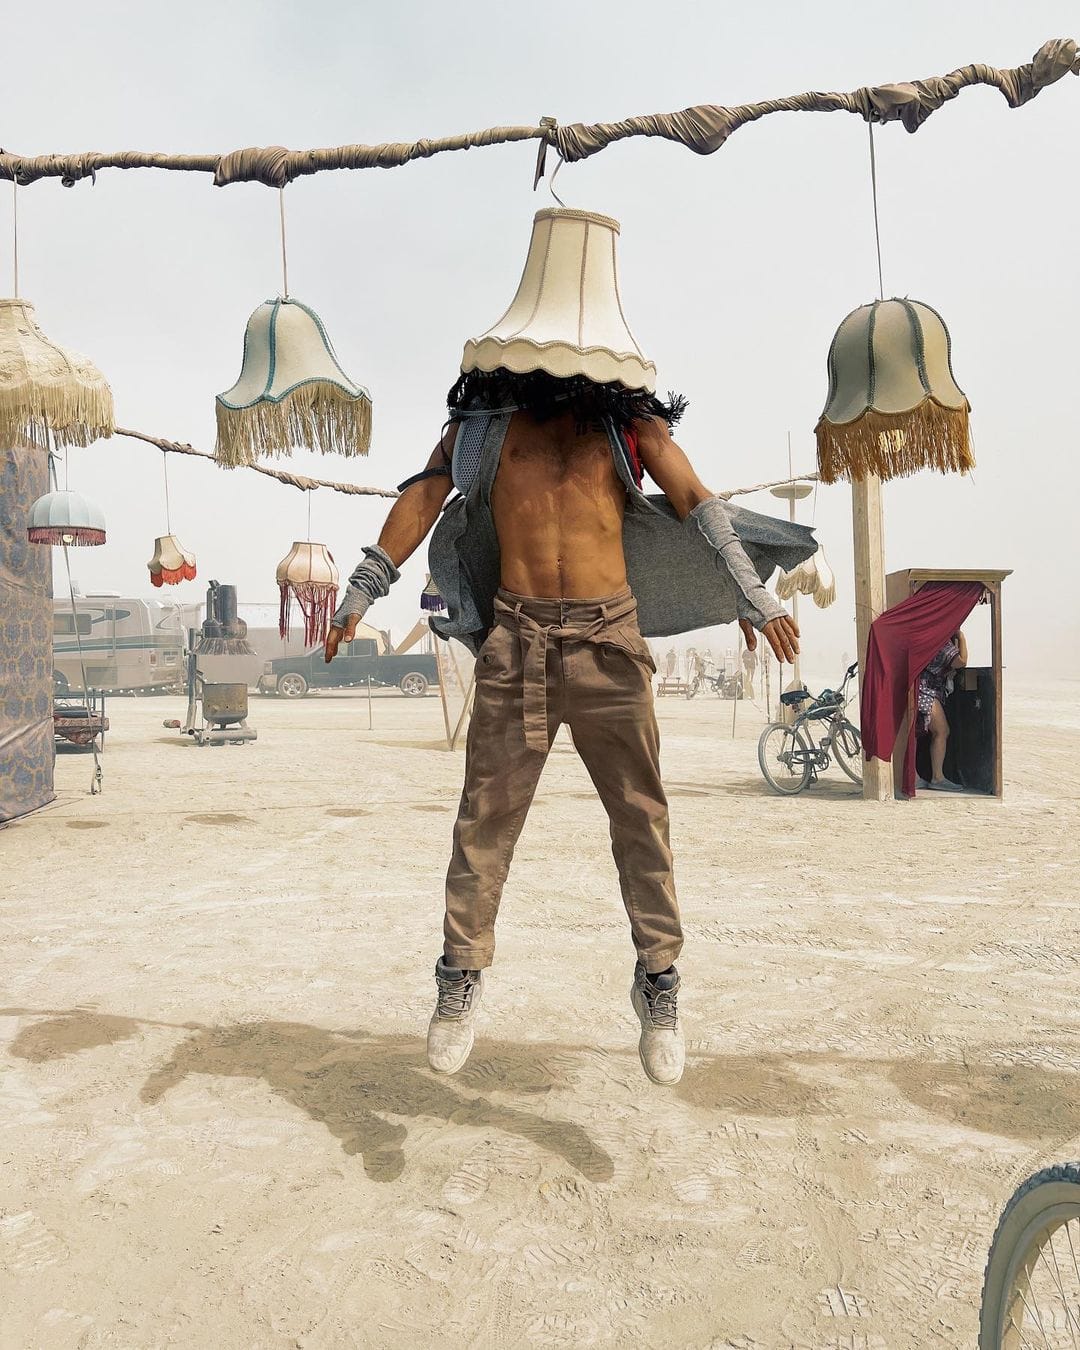 Огненный фестиваль Burning Man вернулся: 16 эпичных фотографий с самого горячего мероприятия планеты 51